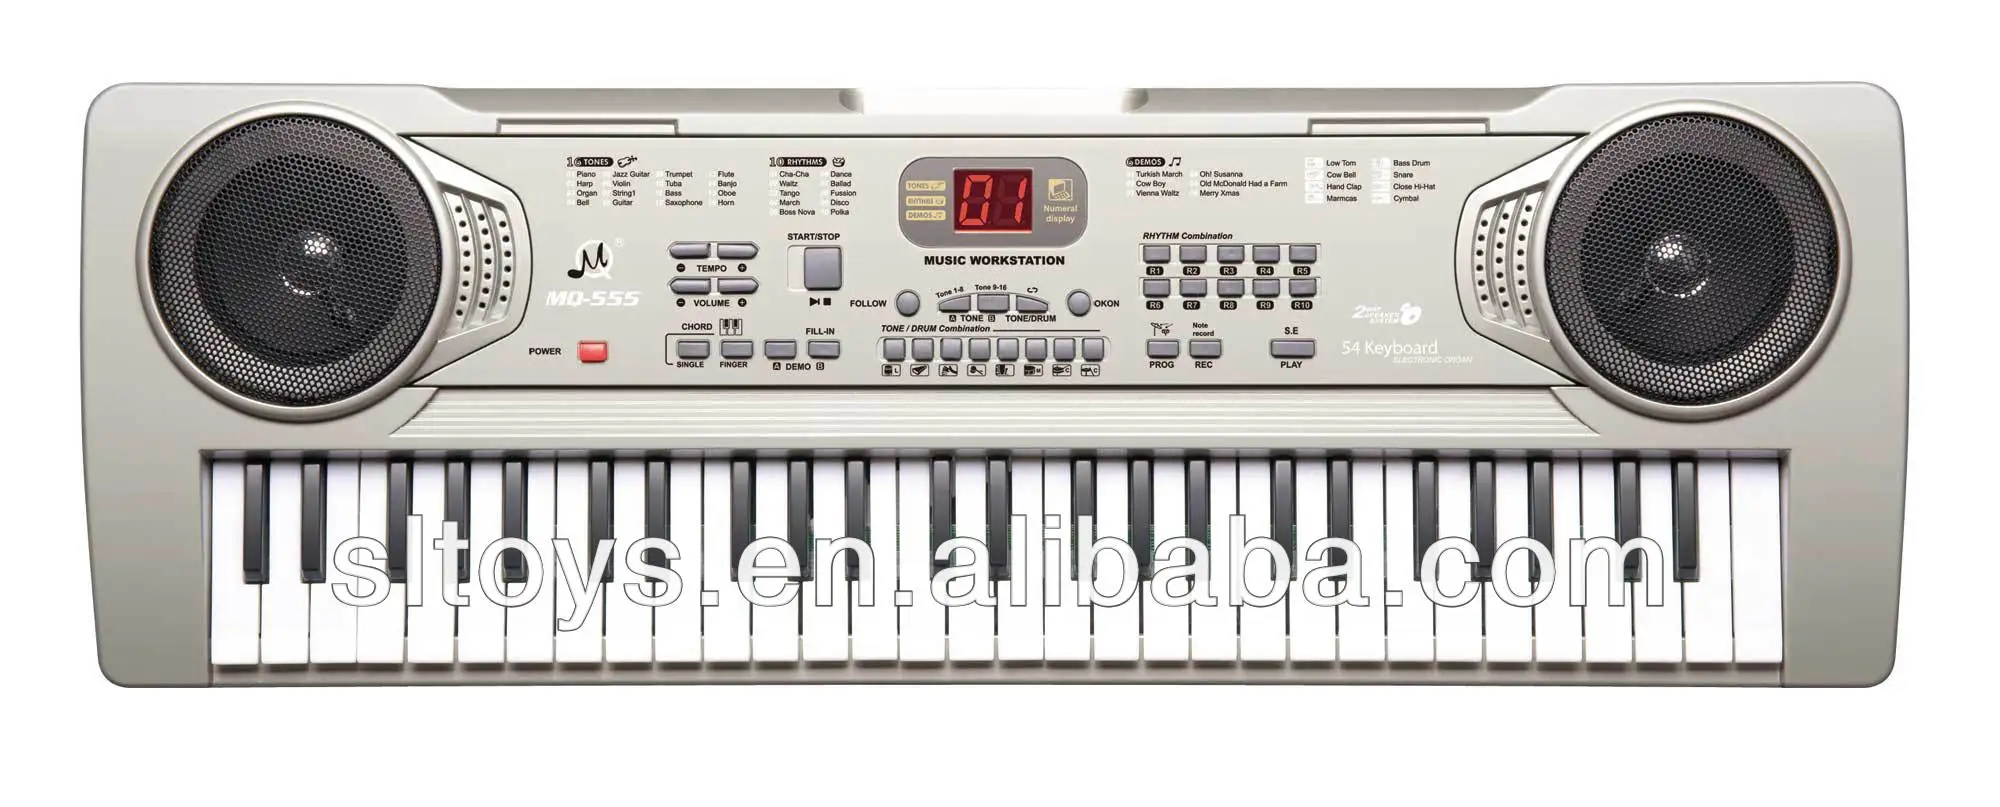 مفاتيح آلة موسيقية مع اسم 54 mq555